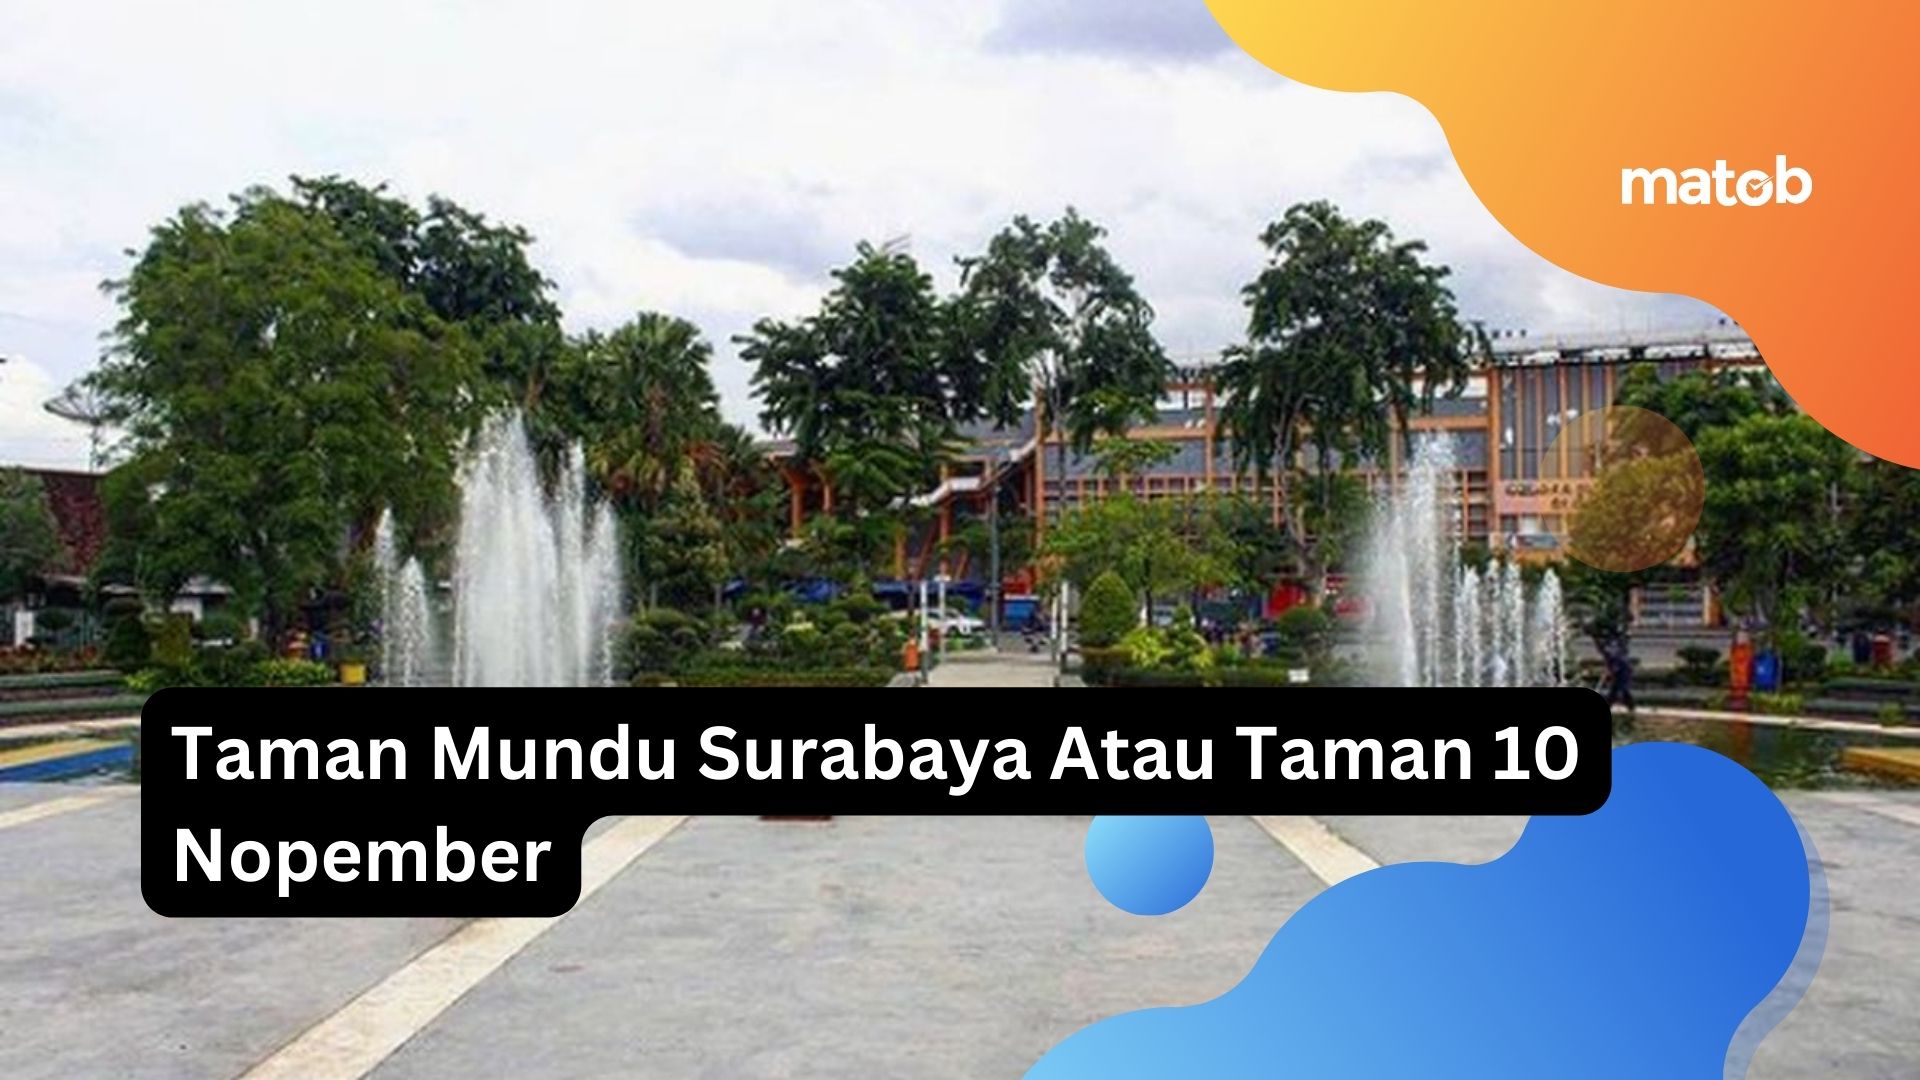 Taman Mundu Surabaya Atau Taman 10 Nopember